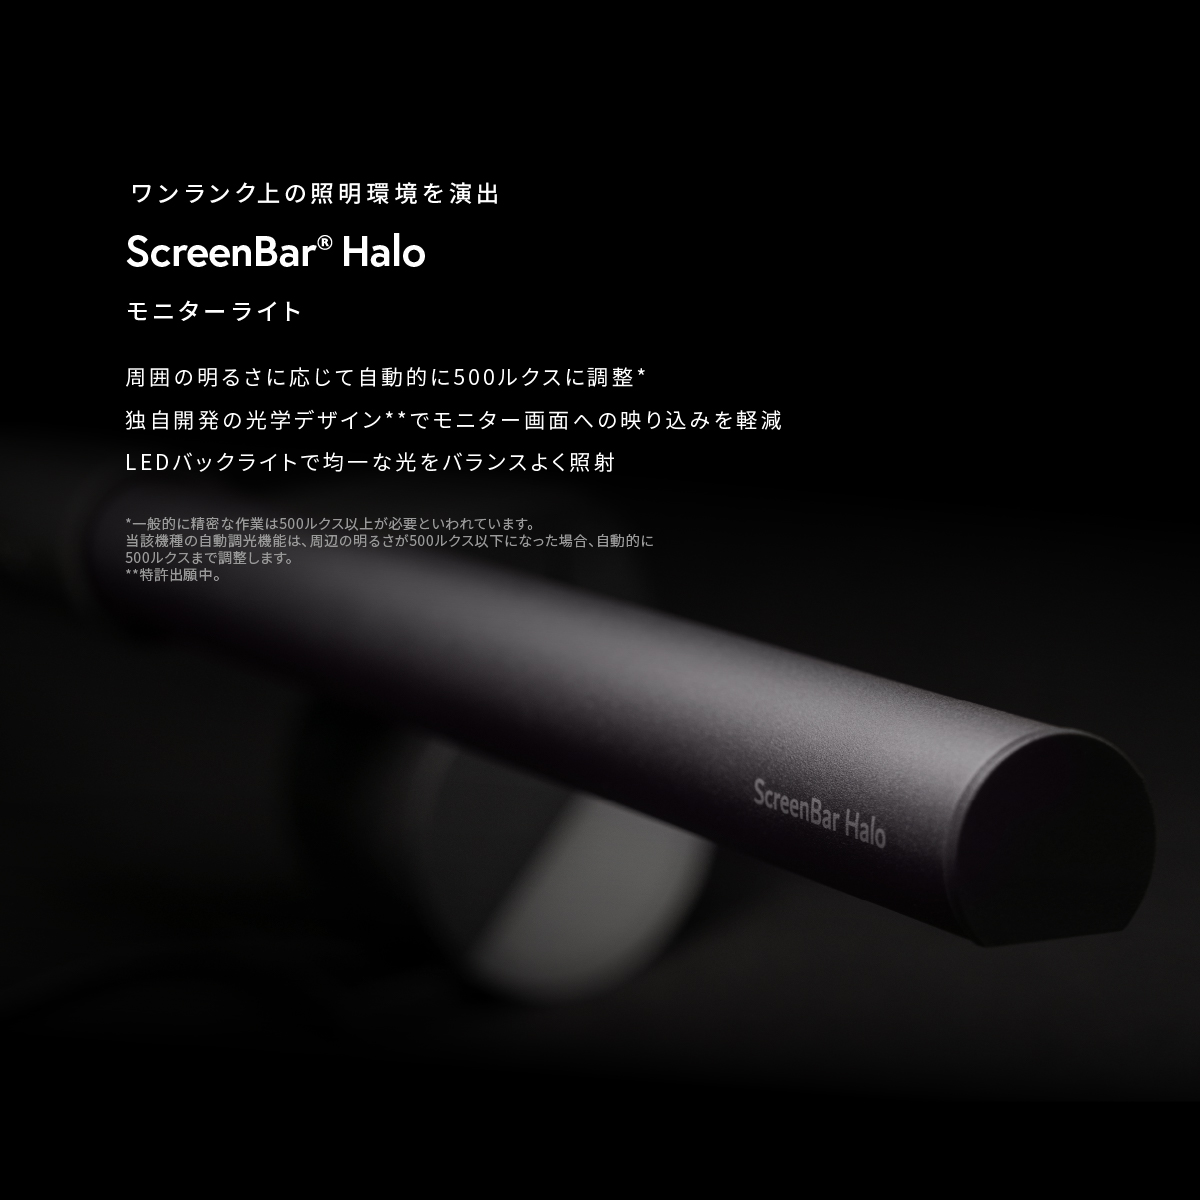 【BenQ公式店】BenQ ScreenBar Halo スクリーンバー ハロー モニターライト モニター掛け式ライト USBライト 自動調光